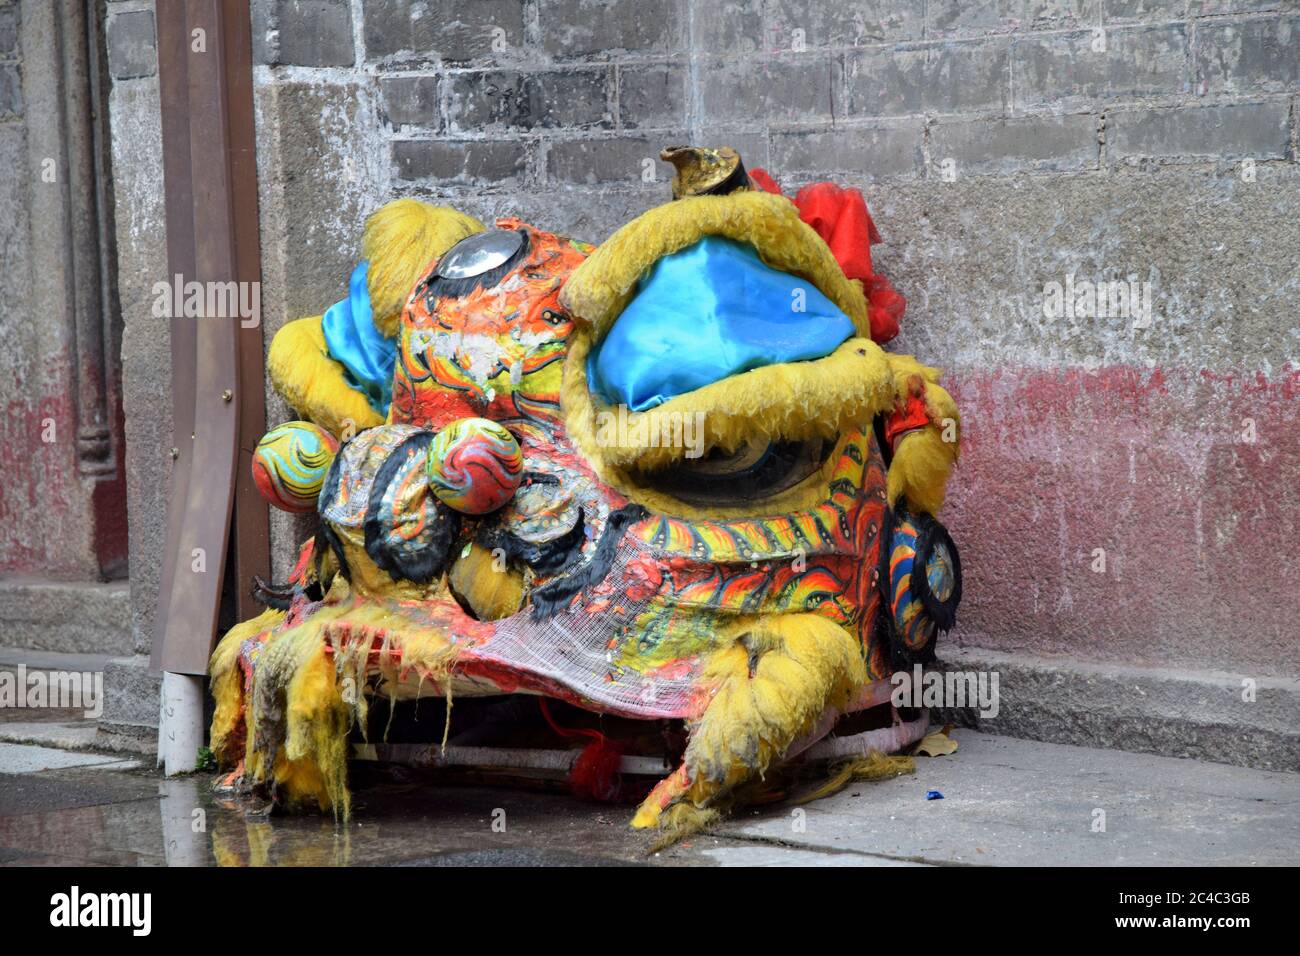 Leone´s testa, parte del costume che è usato nella danza leone, una forma di danza tradizionale nella cultura cinese principalmente arti marziali cinesi Foto Stock